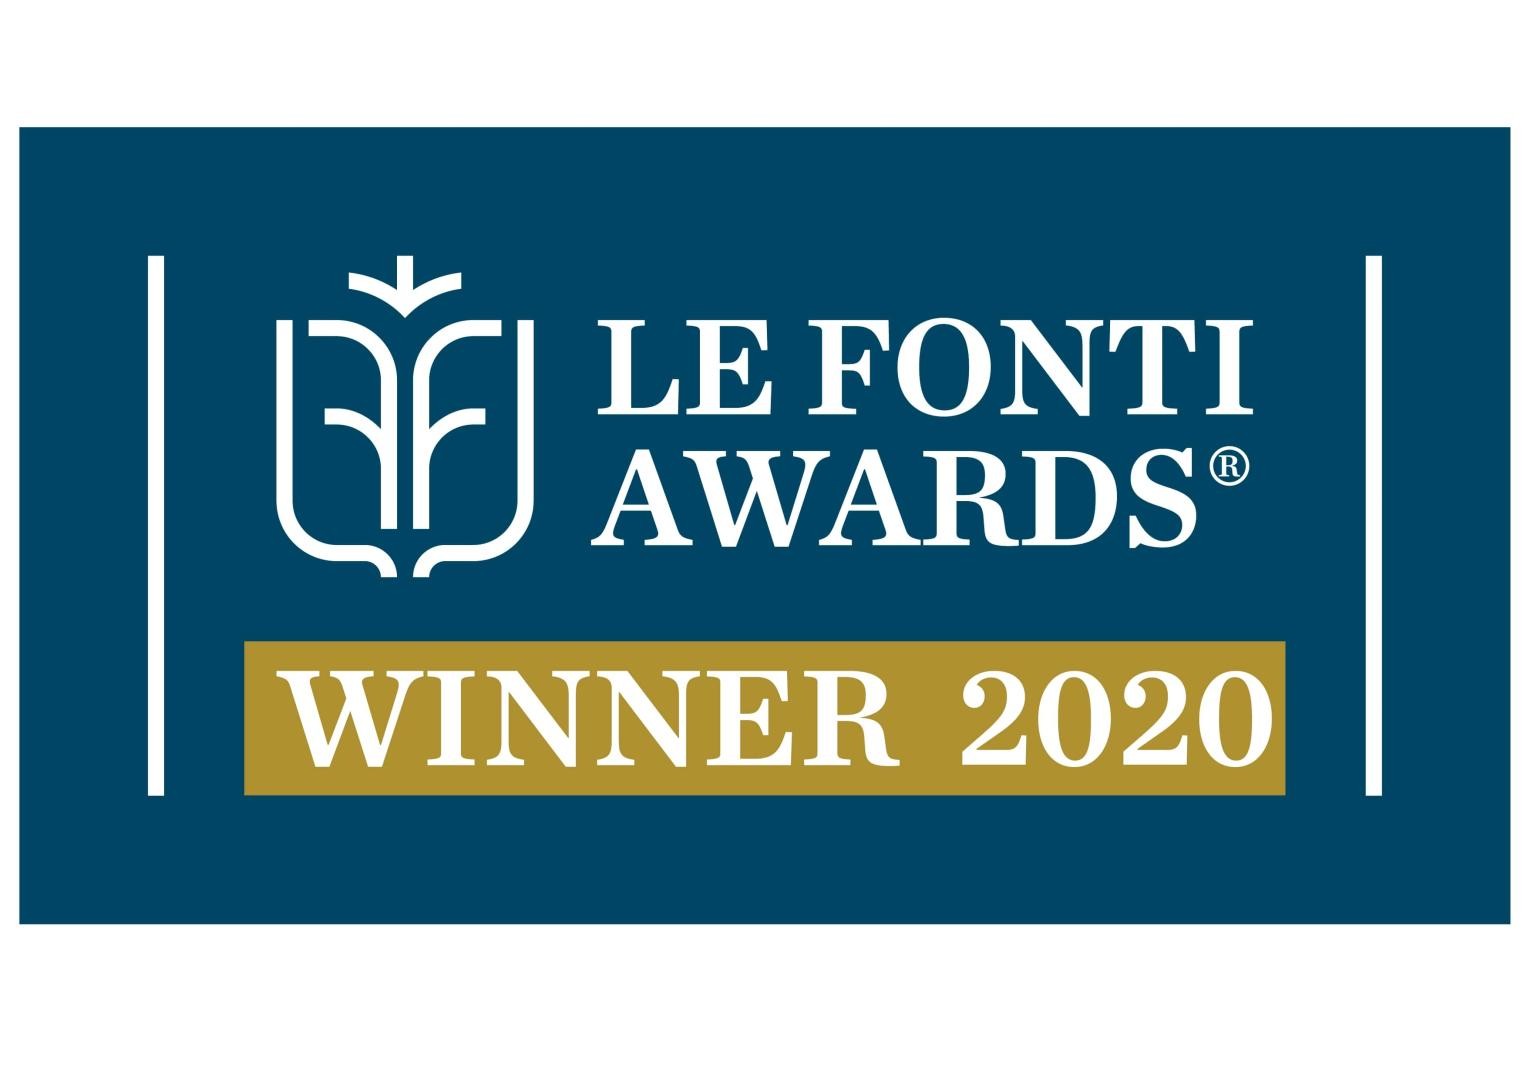 Le Fonti Award